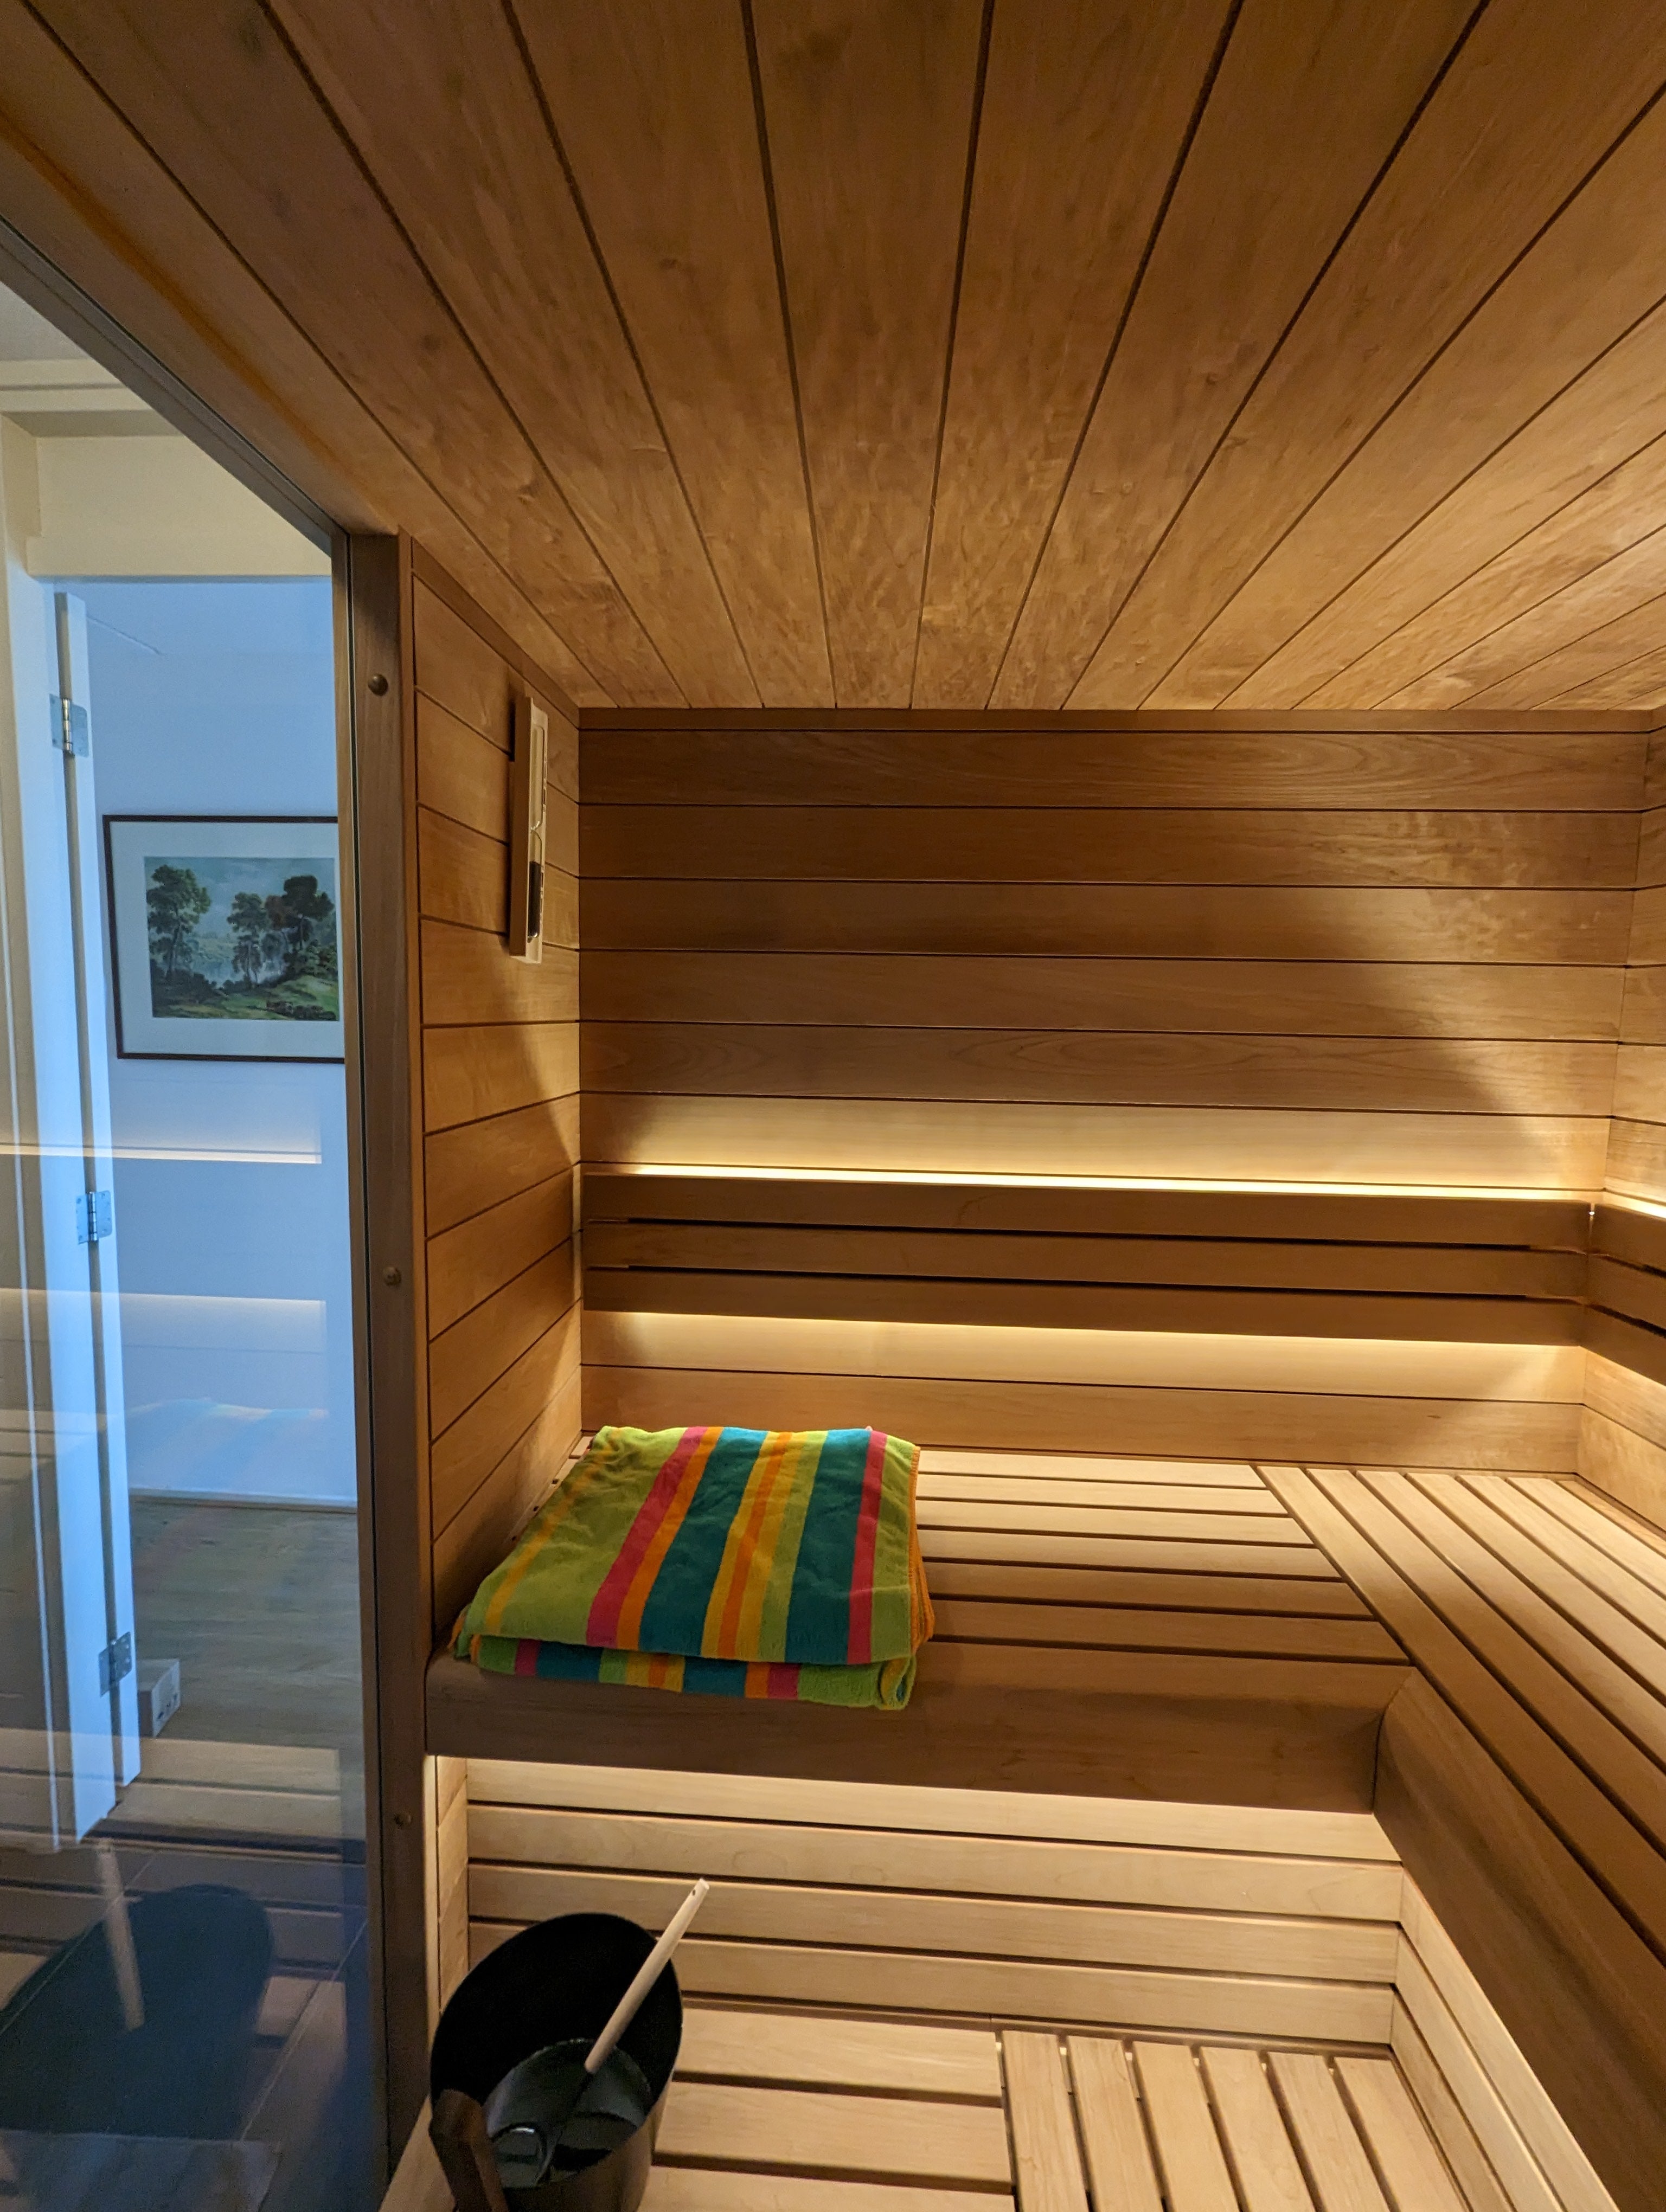 Sauna in een badkamer te Leiden